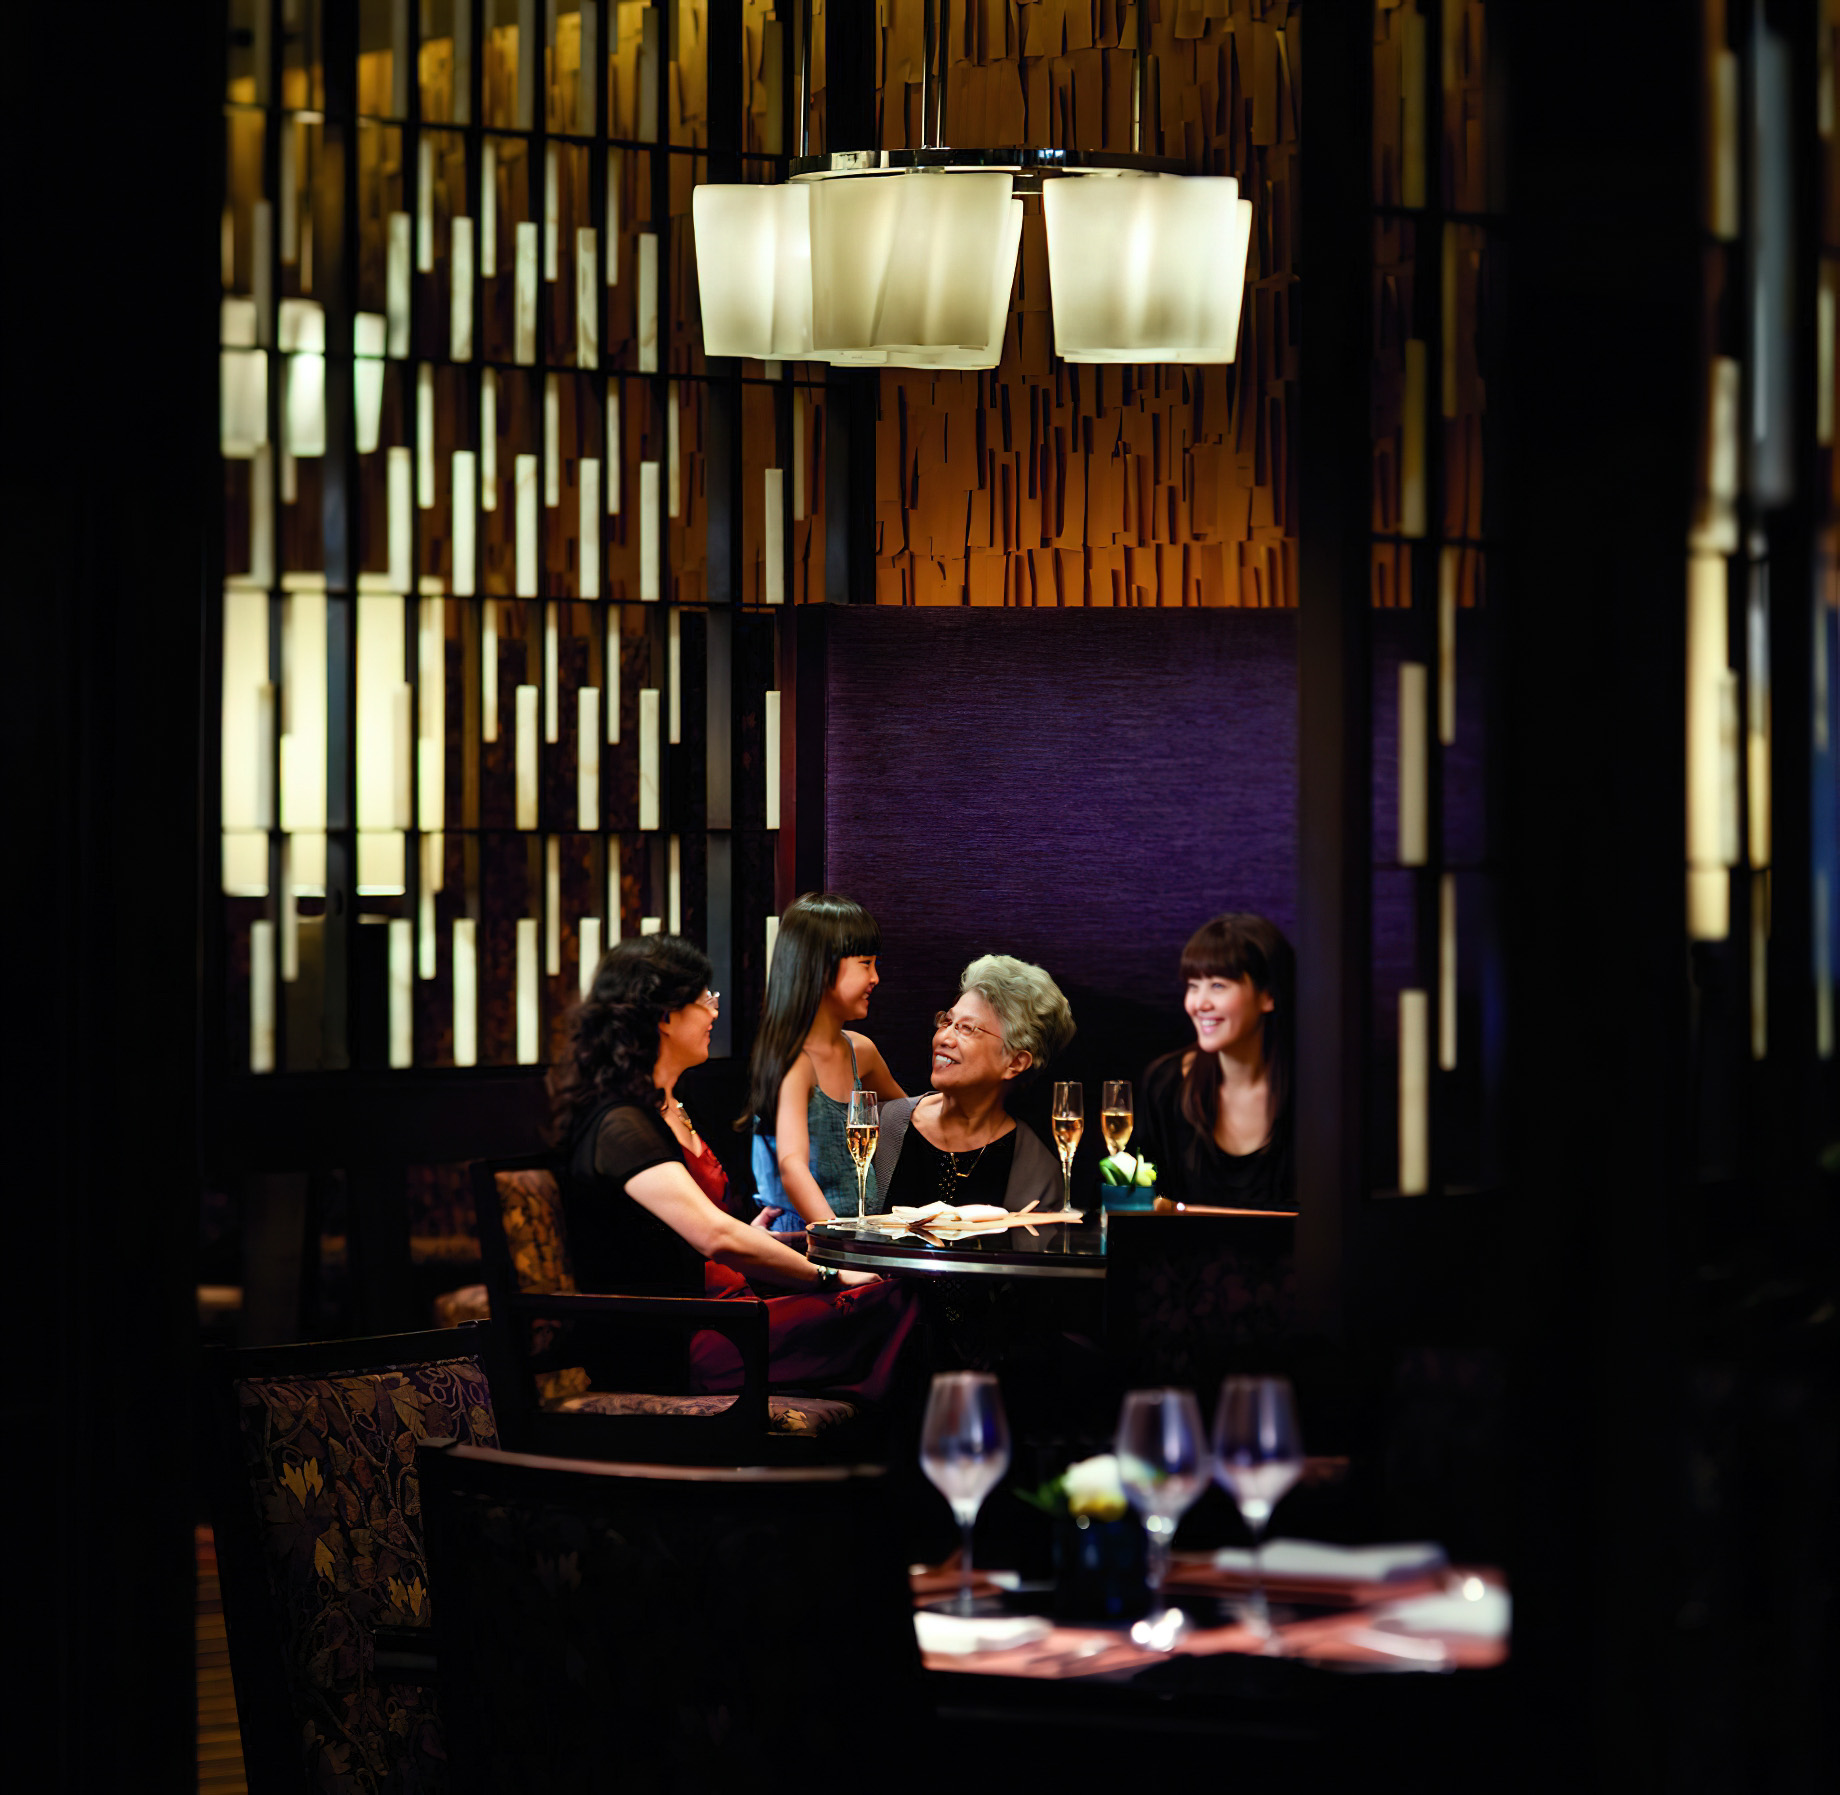 The Ritz-Carlton, Shenzhen Hotel – Shenzhen, China – Flavorz Restaurant